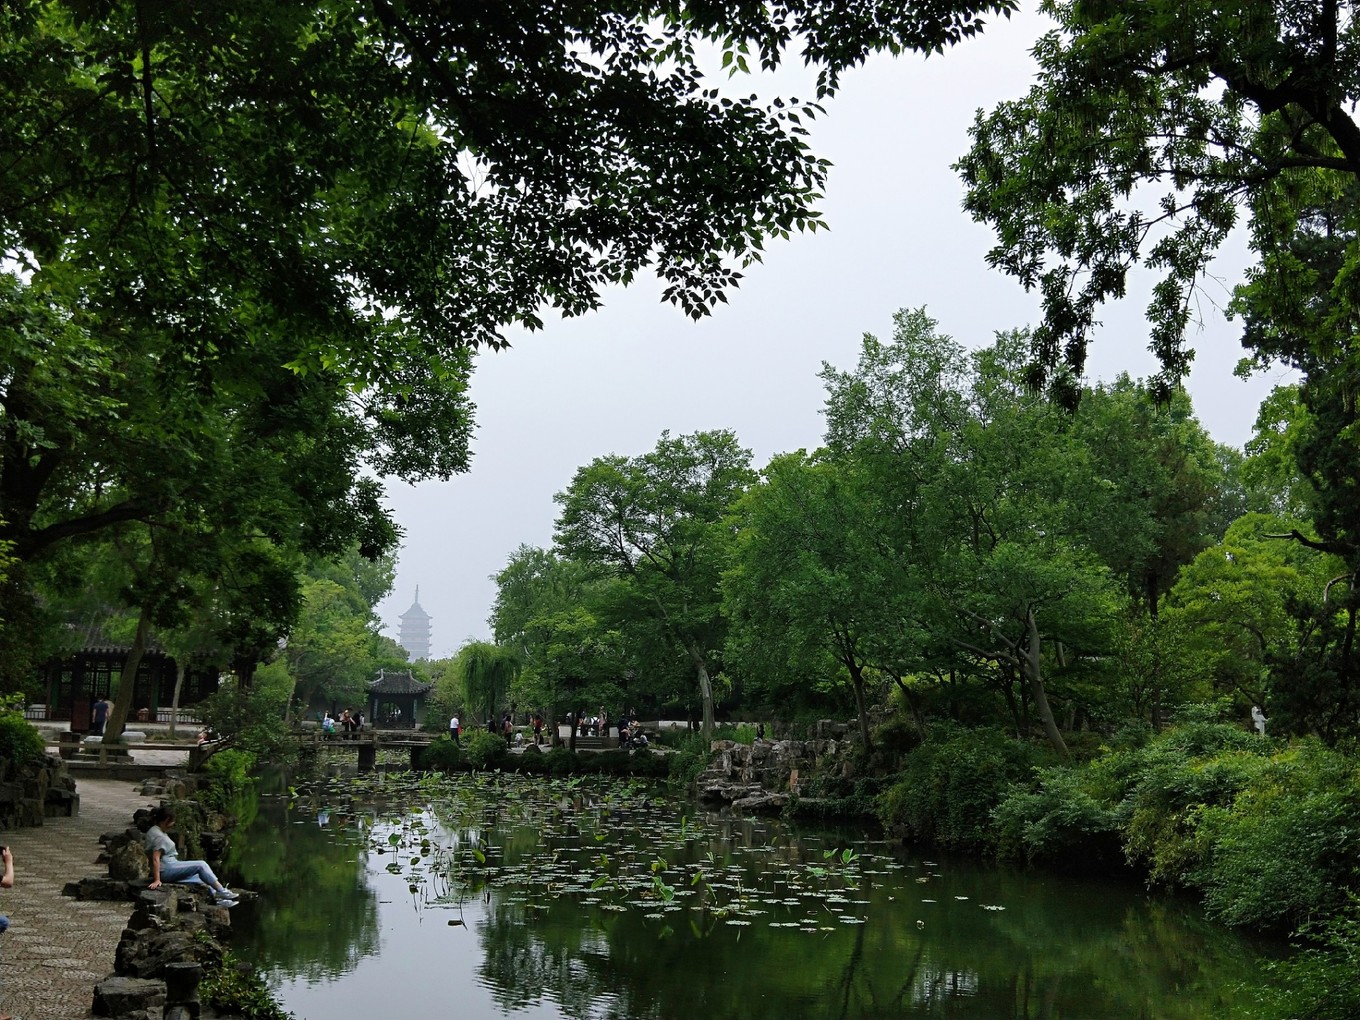 忆江南——行走在诗与园林丨南京、扬州、苏州